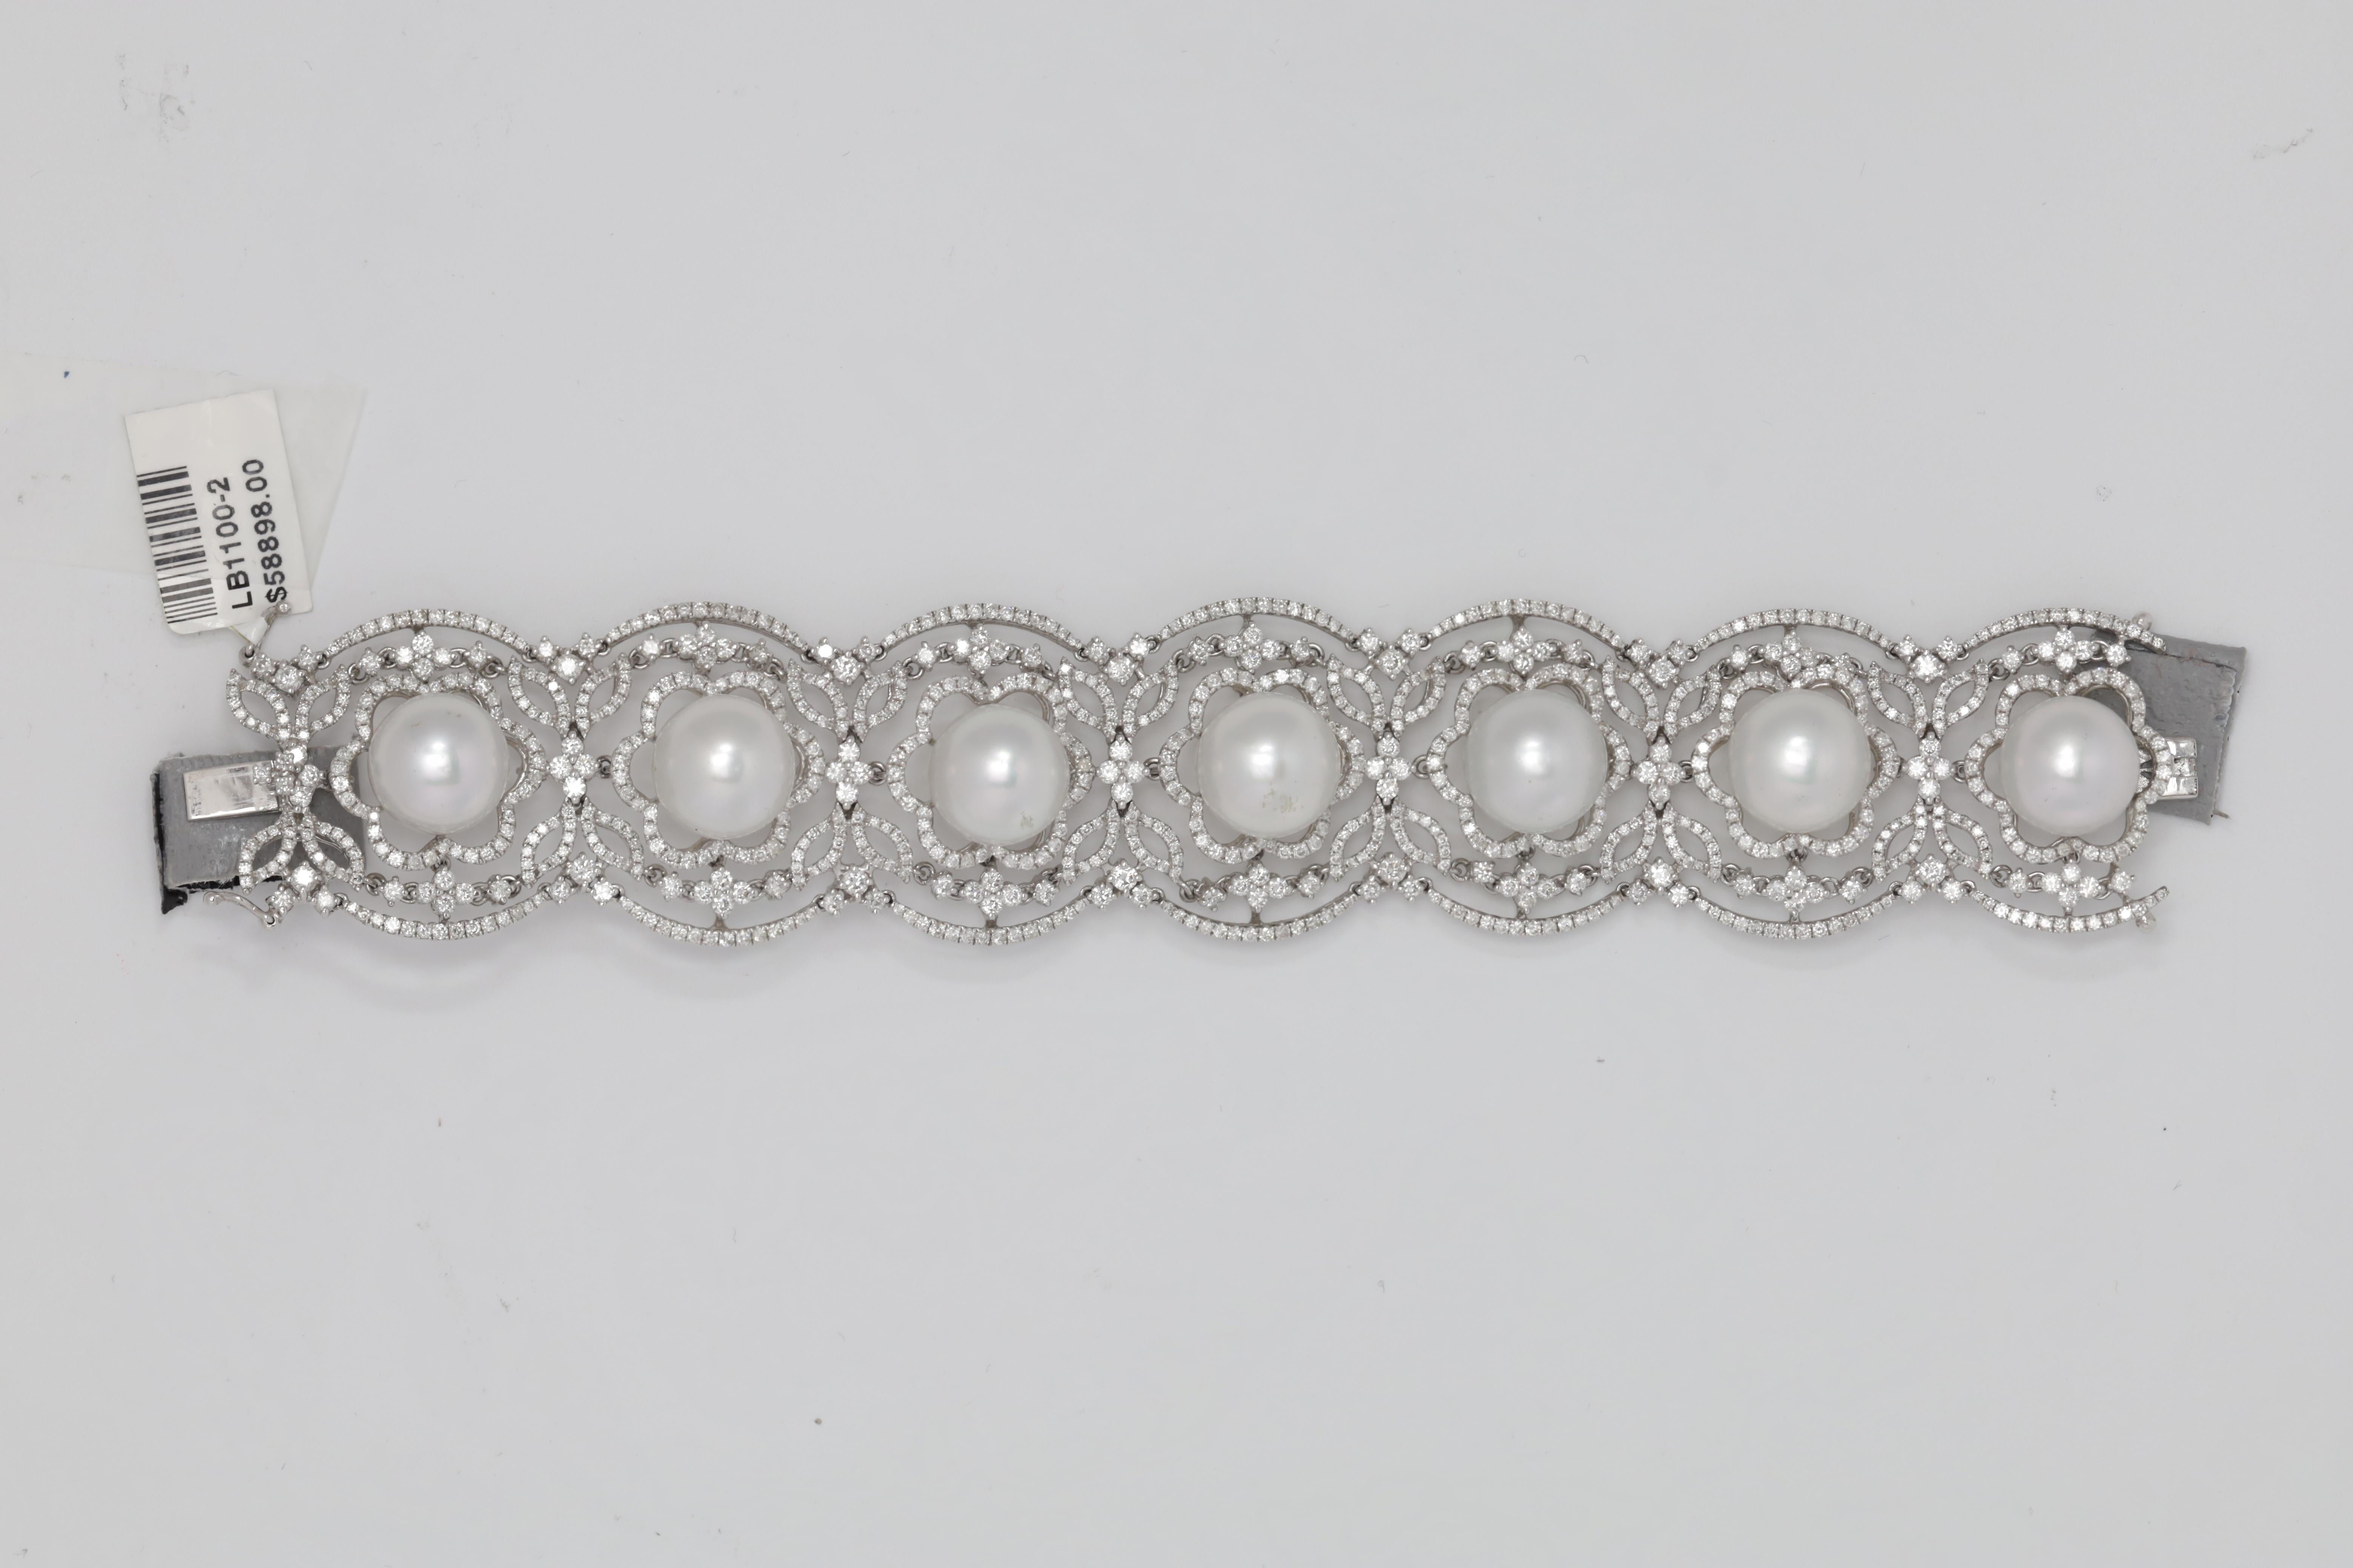 Armband aus 18 k Weißgold mit Diamanten und Perlen, verziert mit 13,5 mm großen Tahiti-Perlen, umgeben von einem Blumendesign mit Diamanten von 12,88 Karat.
Diana M. ist seit über 35 Jahren ein führender Anbieter von hochwertigem Schmuck.
Diana M